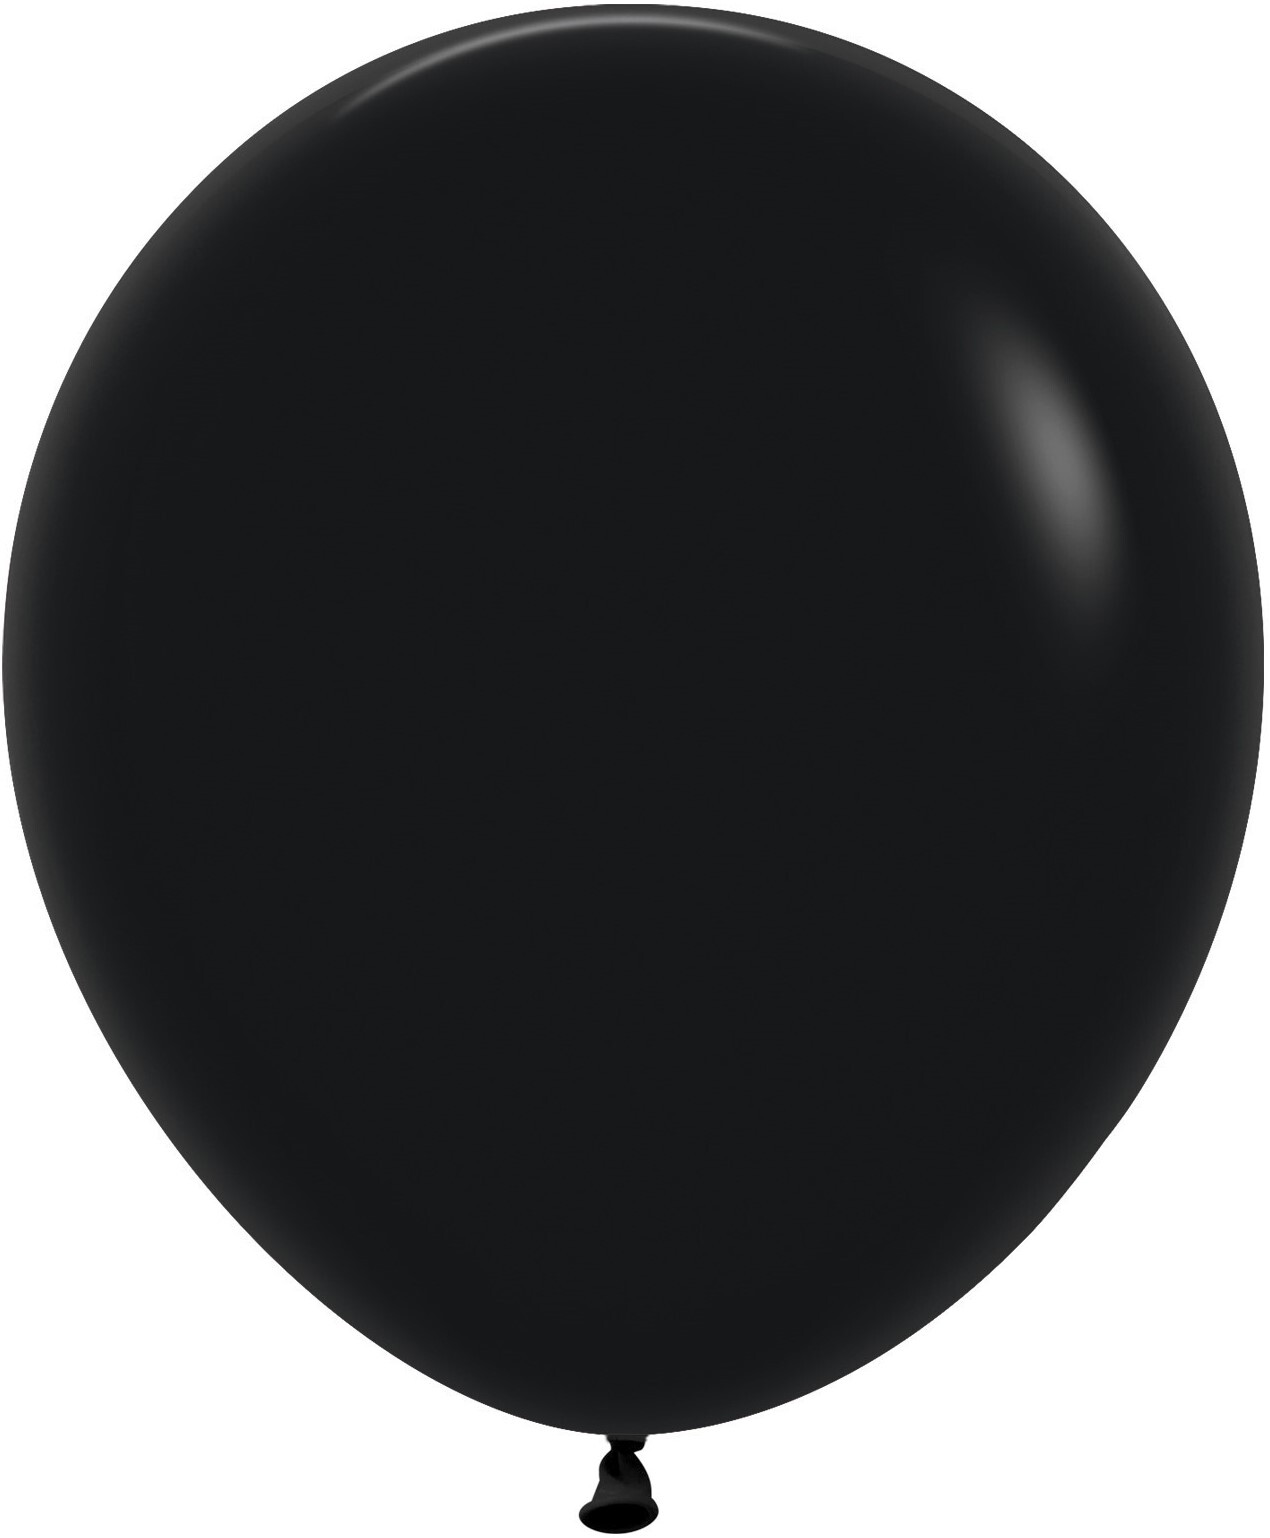 Черный шар против. Черный шар 60 см Семпертекс. Шары черный металлик Семпертекс. S 24"/60 см пастель черный 1 шт. Шар пастель е 10" черный (Black) 1102-1565 Gemar {Китай}.